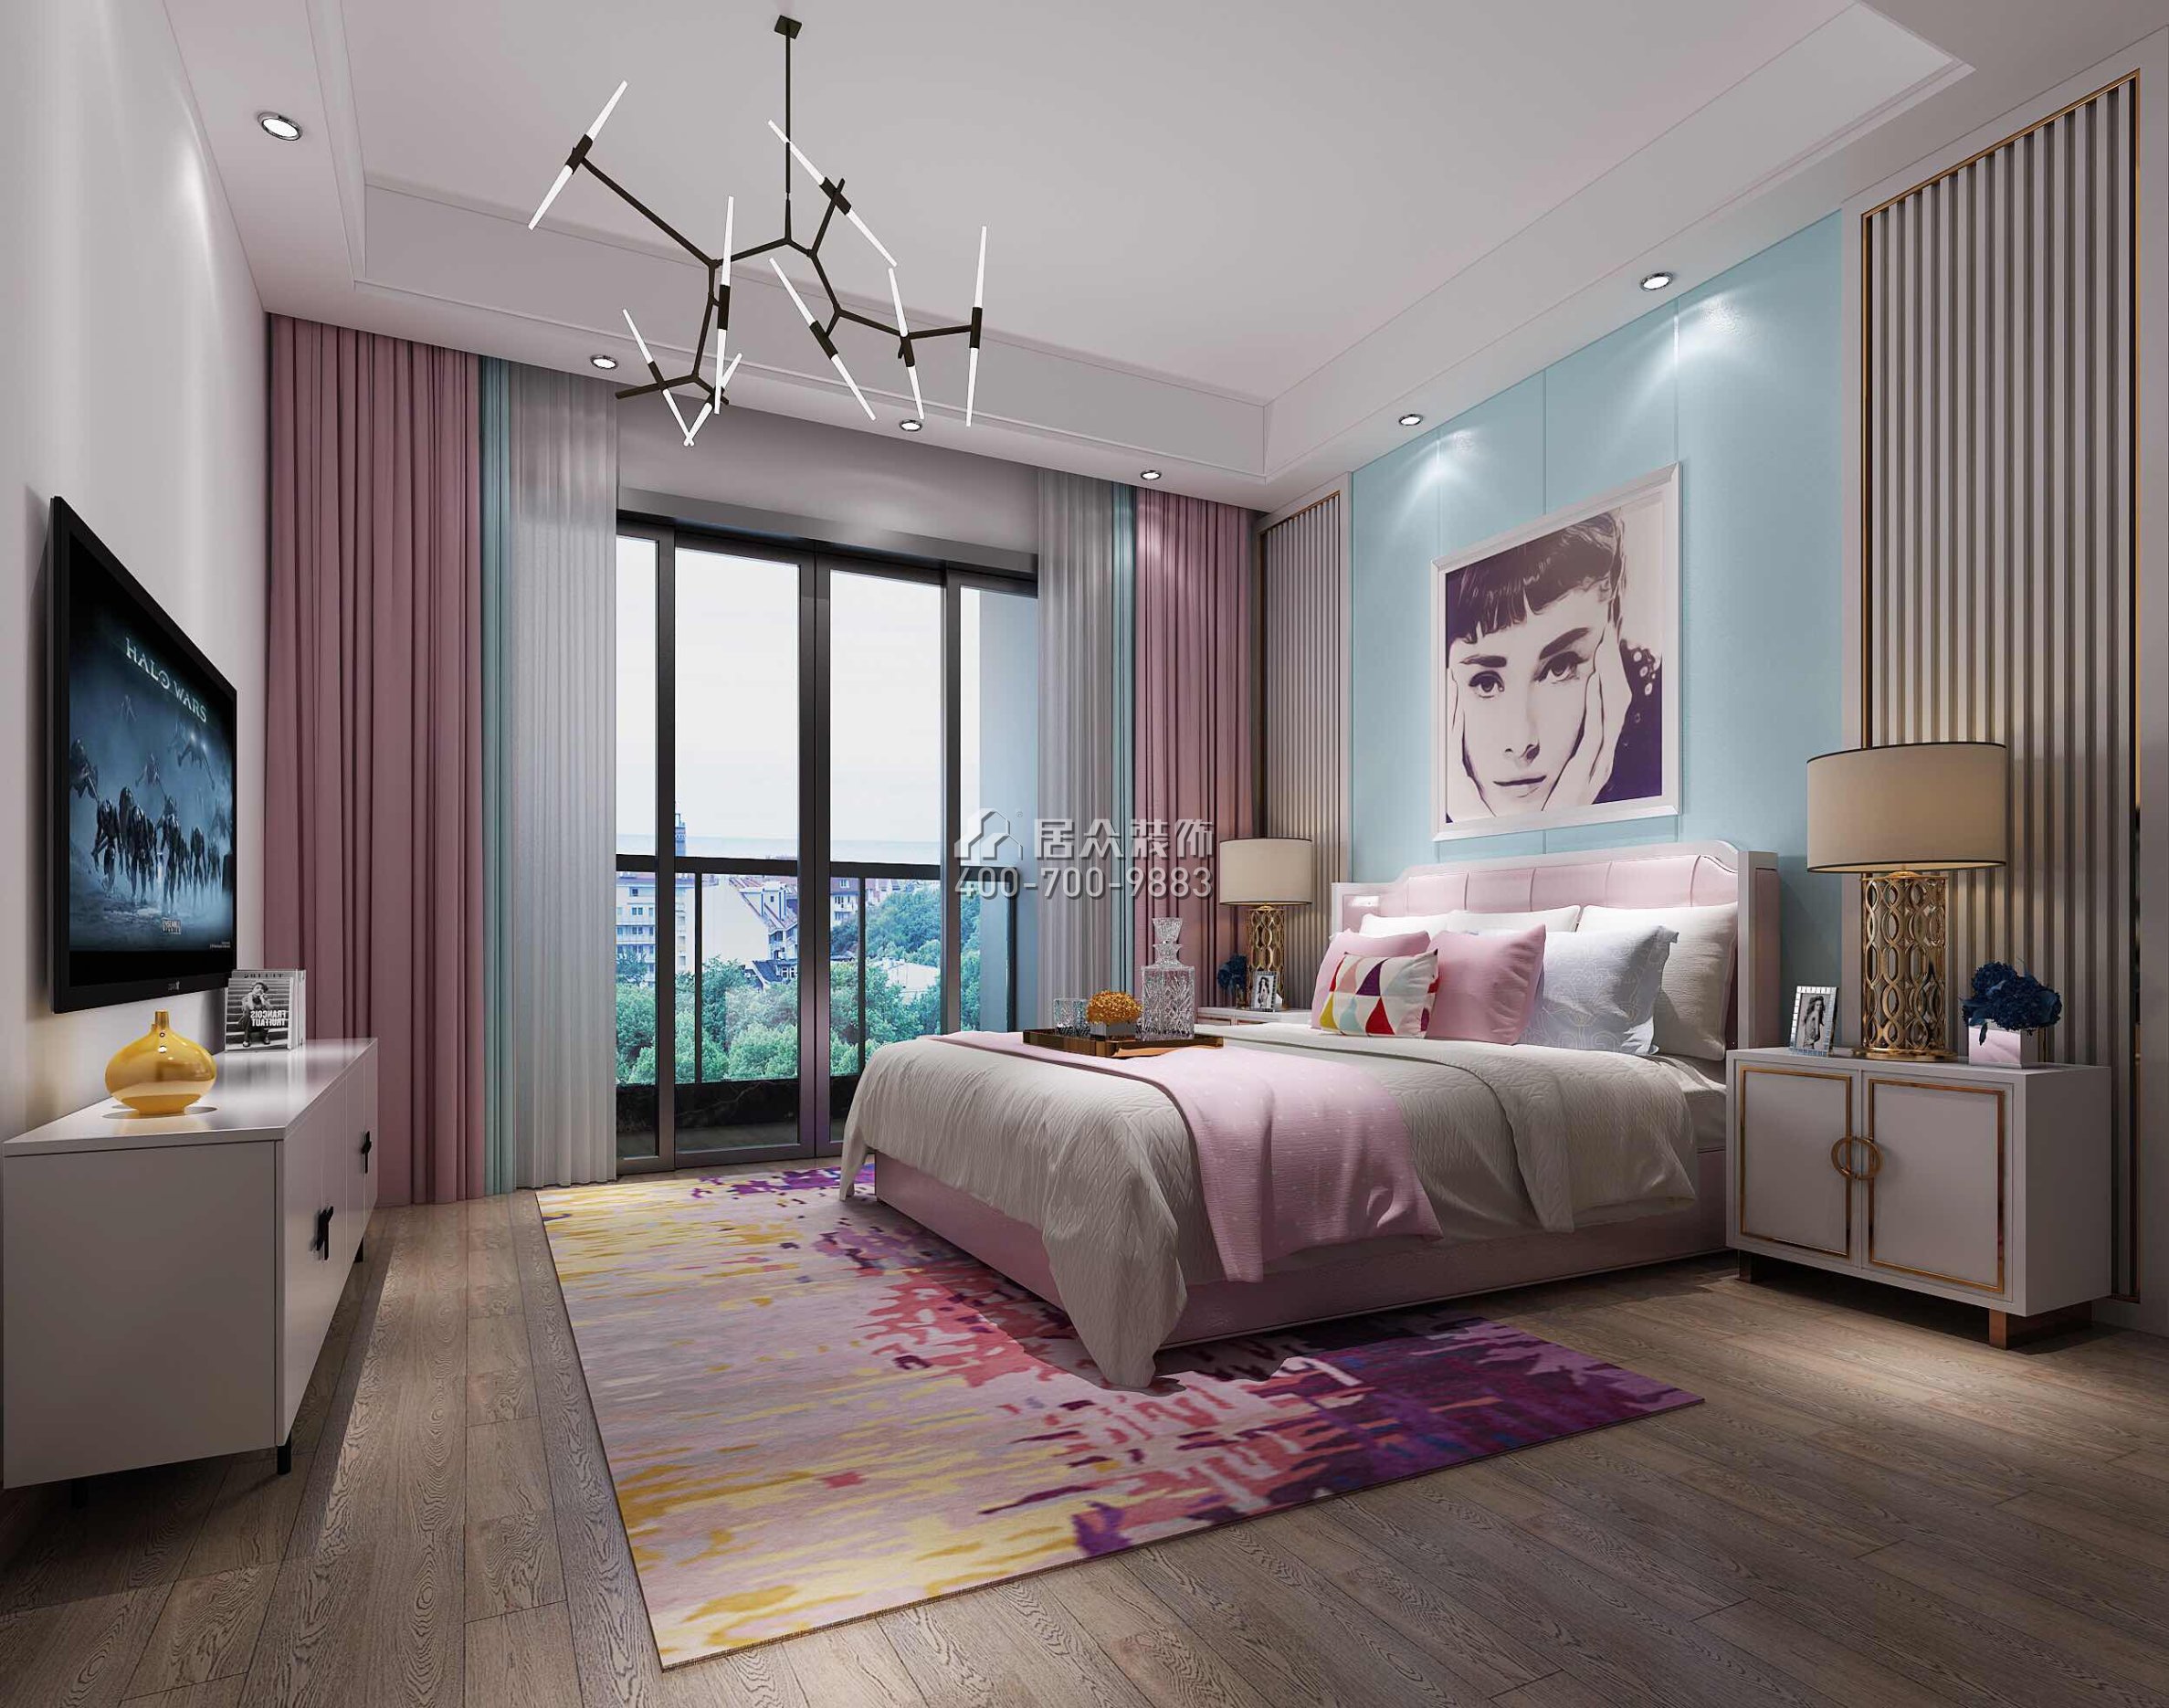 龙光水悦龙湾500平方米现代简约风格别墅户型卧室装修效果图